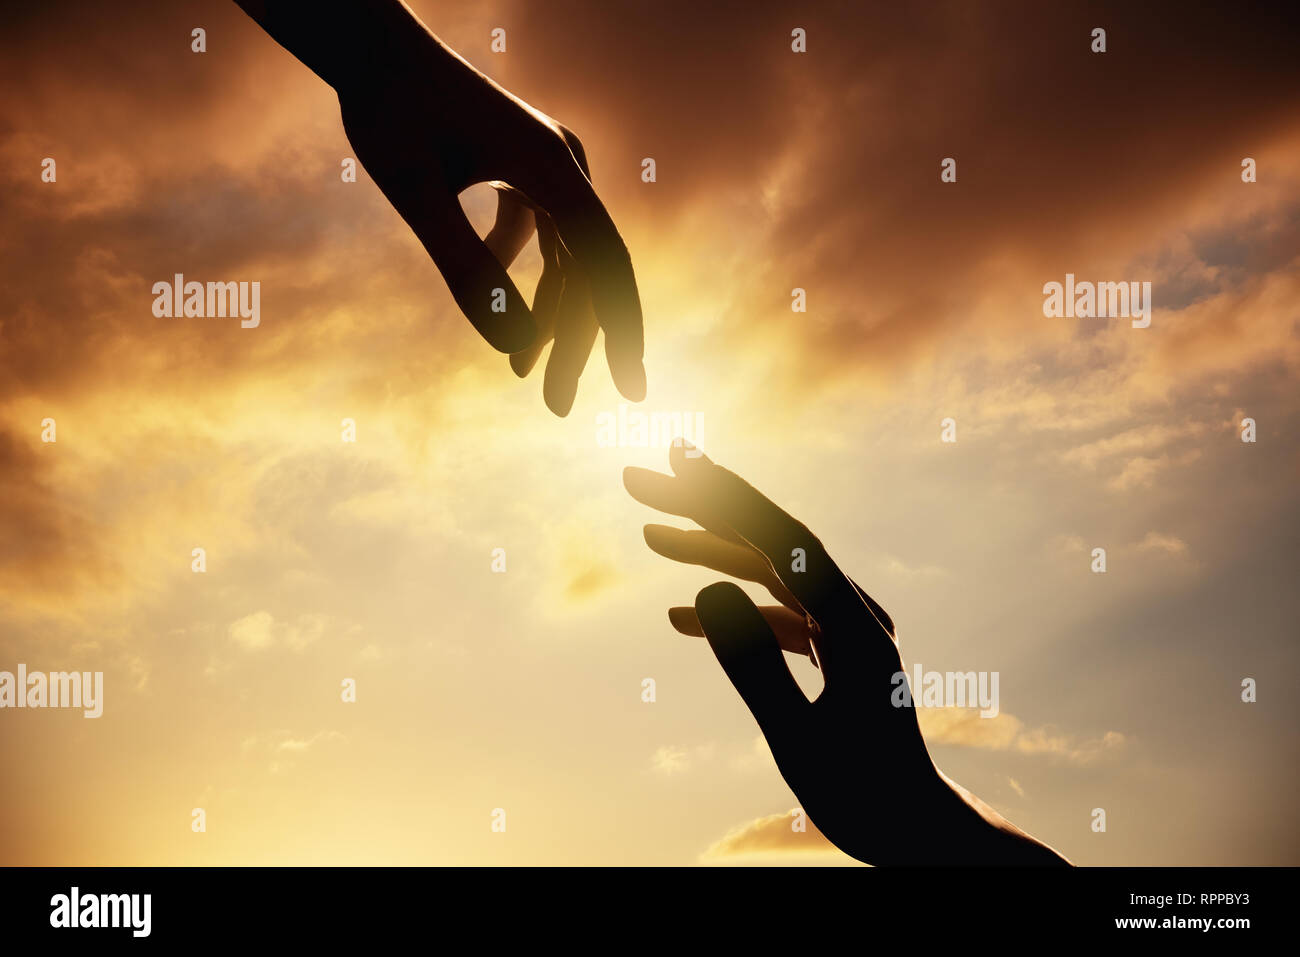 Silueta de manos humanas en sunset.La confianza y ayudar a concepto Foto de stock